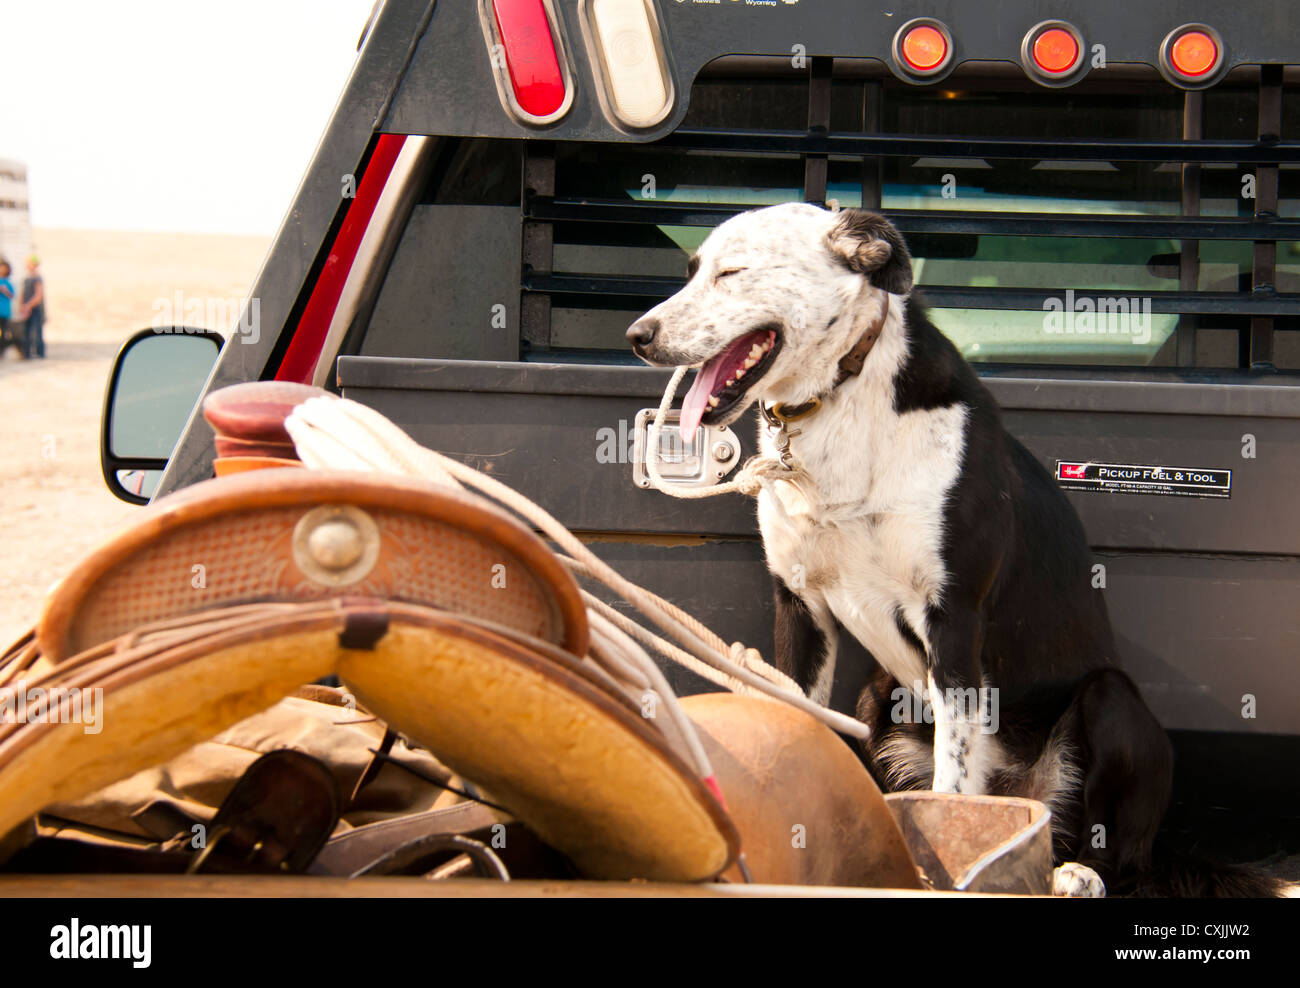 Cowboys chien et selle sur camionnette. Rodeo, Bruneau, California, USA Banque D'Images